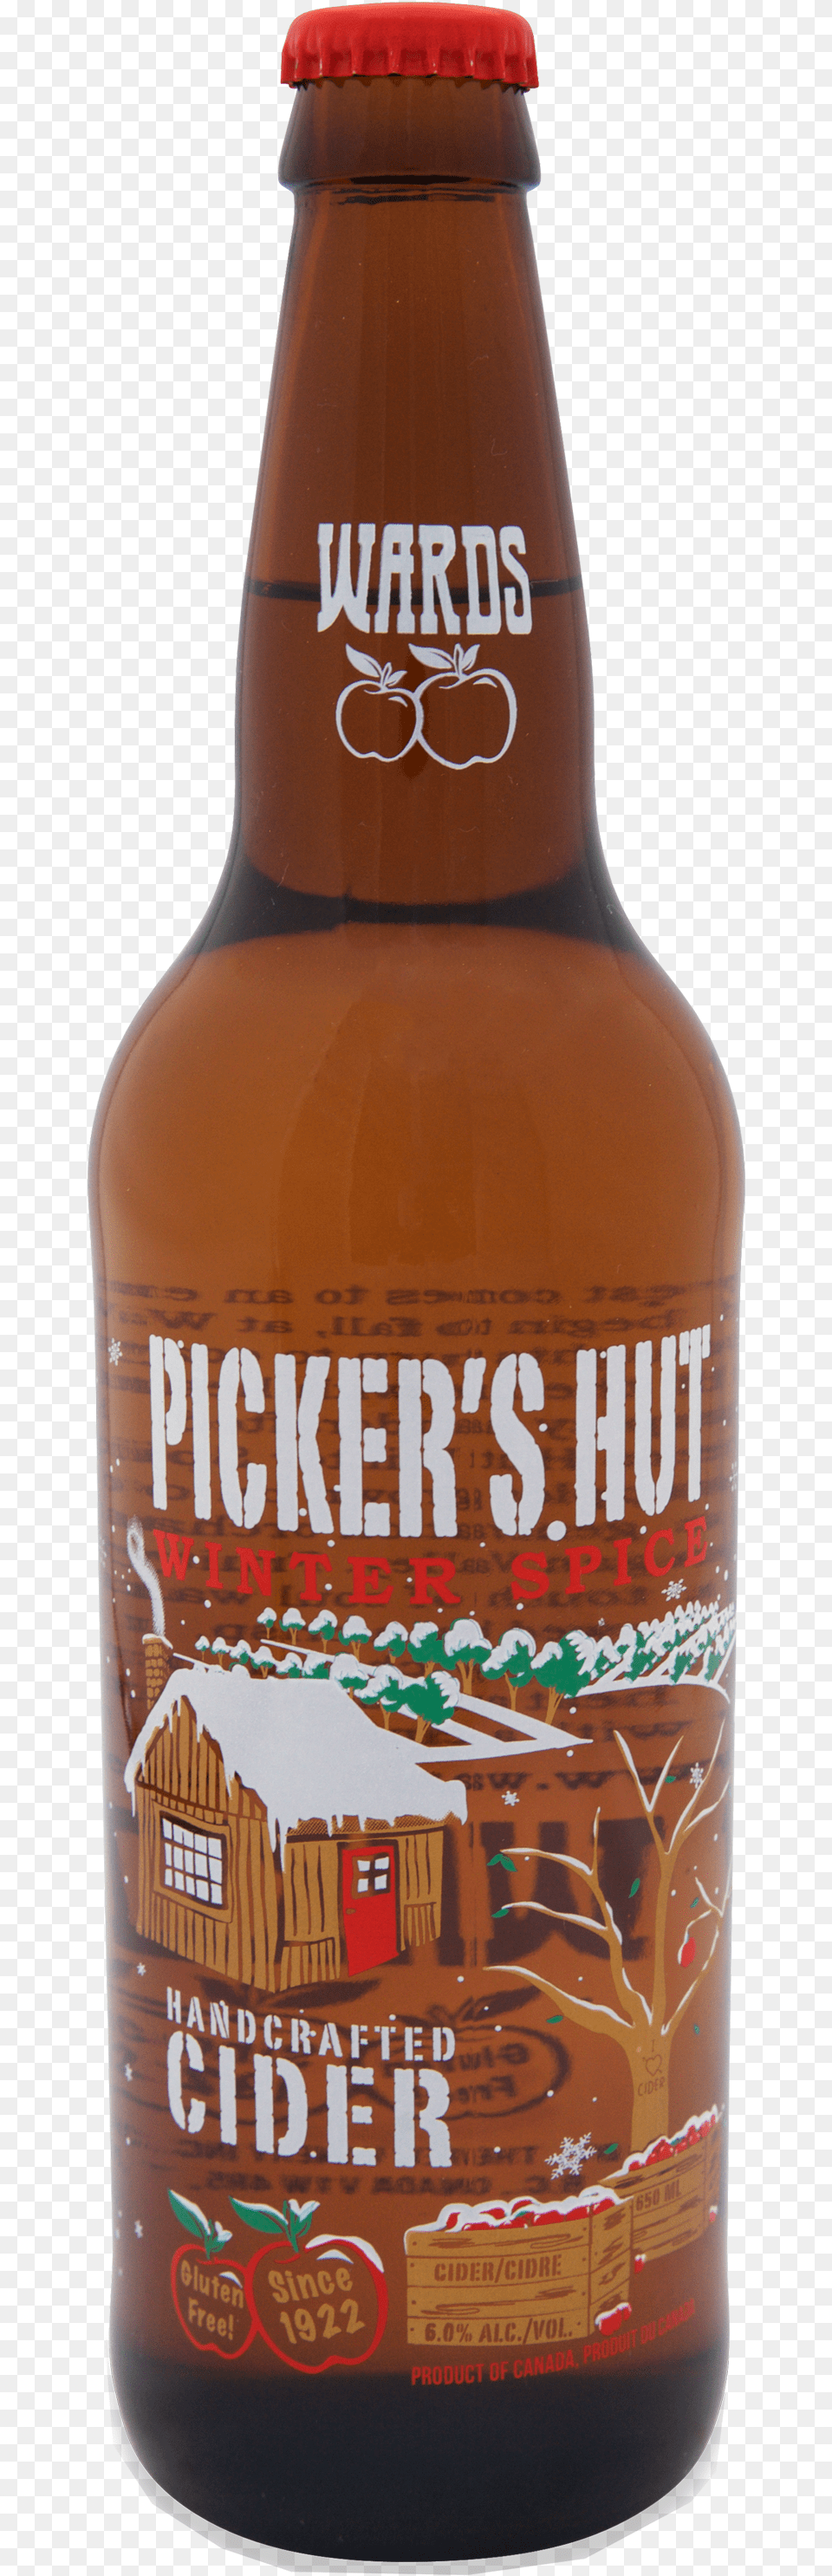 Wards Picker39s Hut Winter Spice Beer Bottle, Alcohol, Beer Bottle, Beverage, Liquor Free Transparent Png